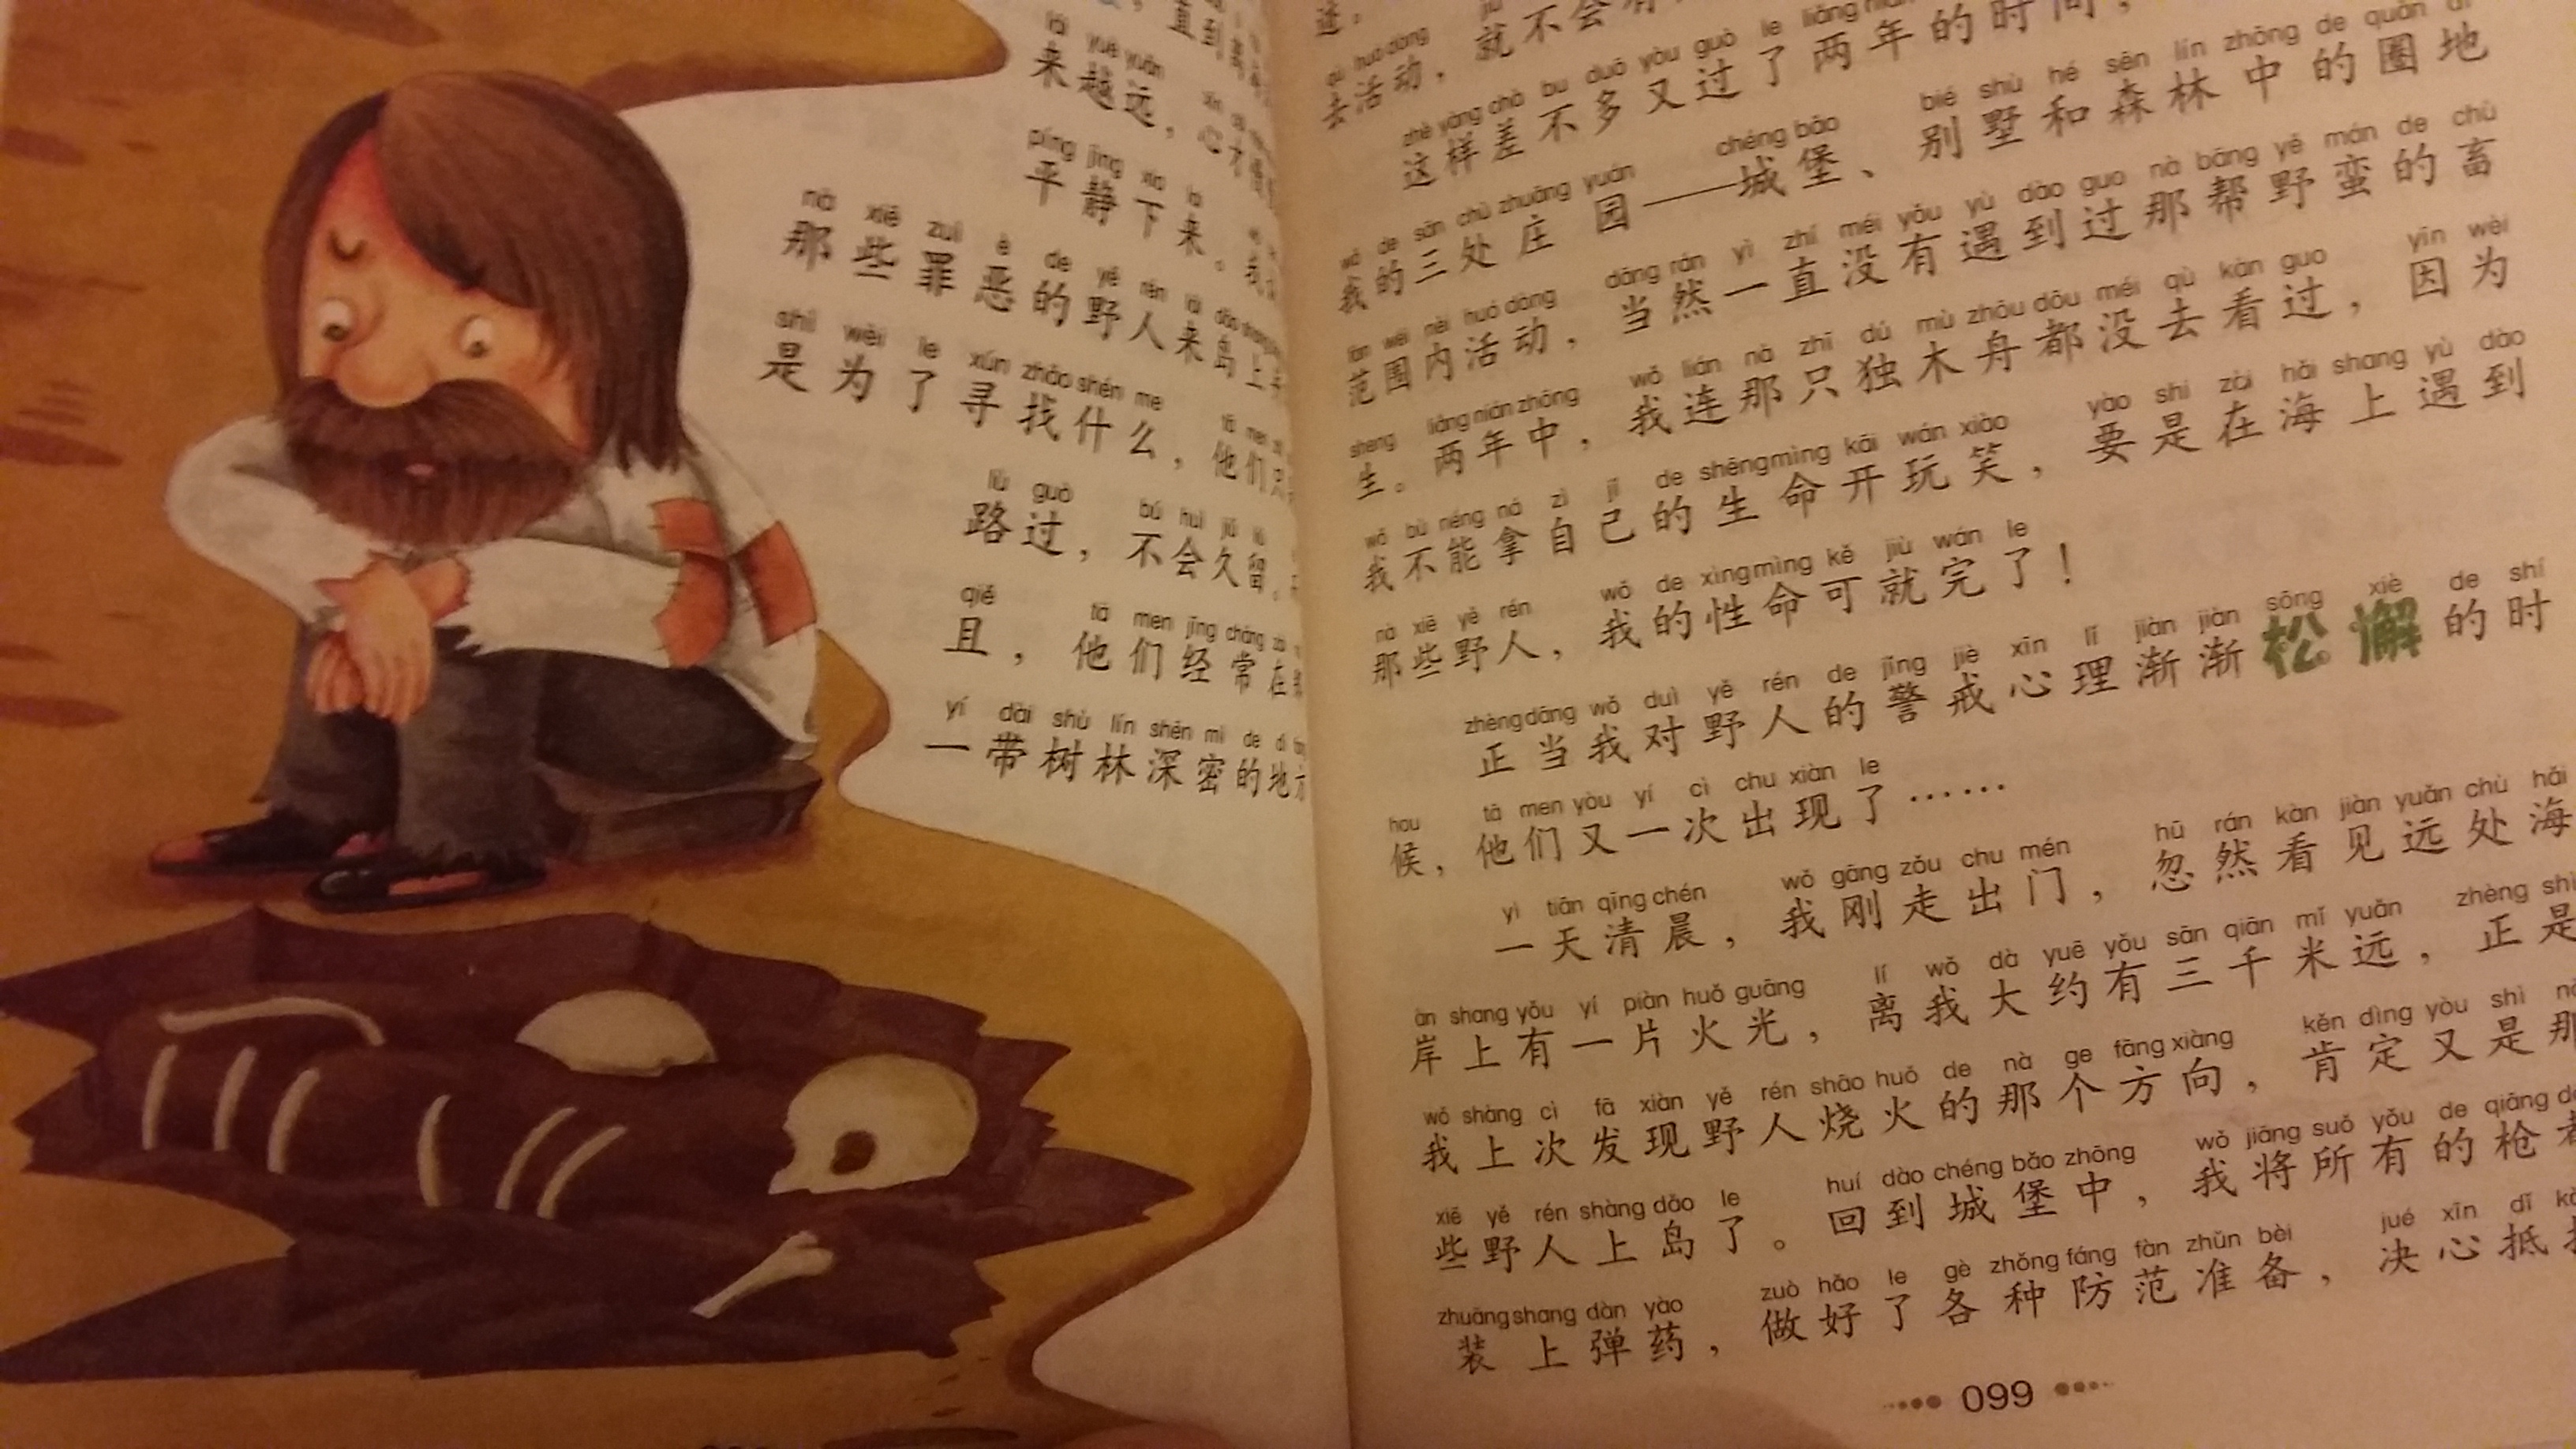 这版不知为什么翻译的是“鲁滨孙”，不过编译的内容很生动，有注音，适合低年级的同学看！